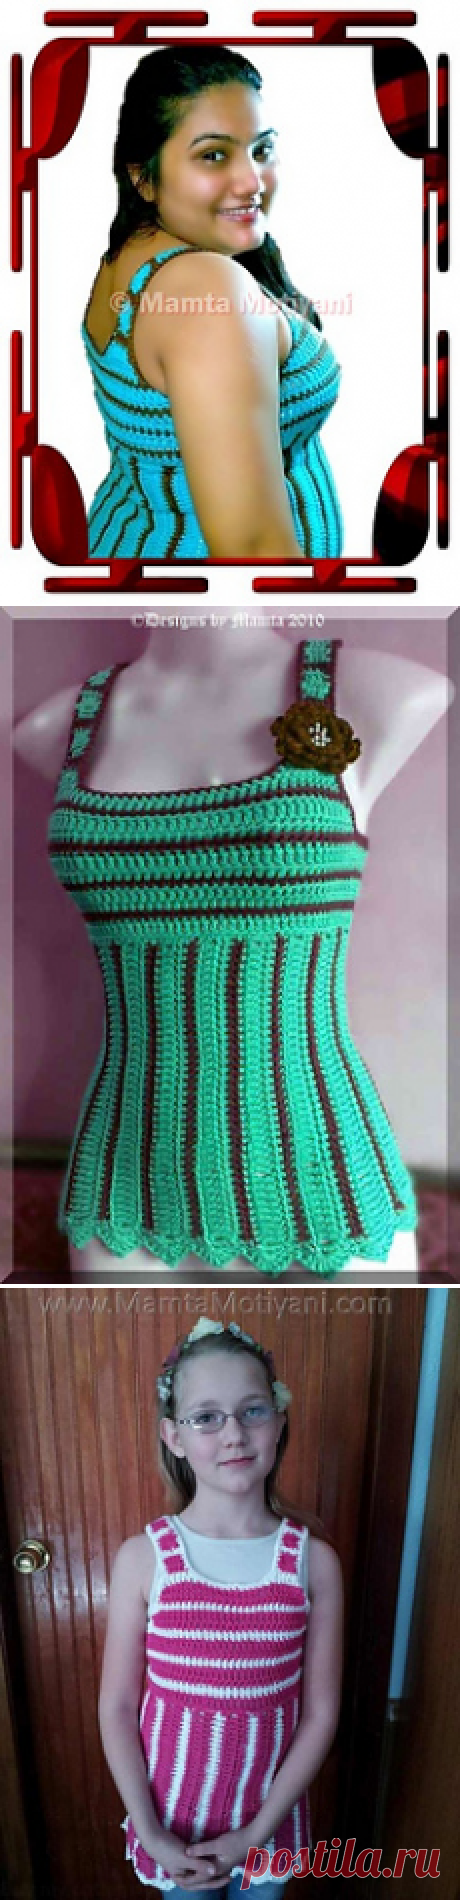 Ravelry: Crochet Tank Top Pattern Turquoise Delight Shirt pattern by Mamta Motiyani